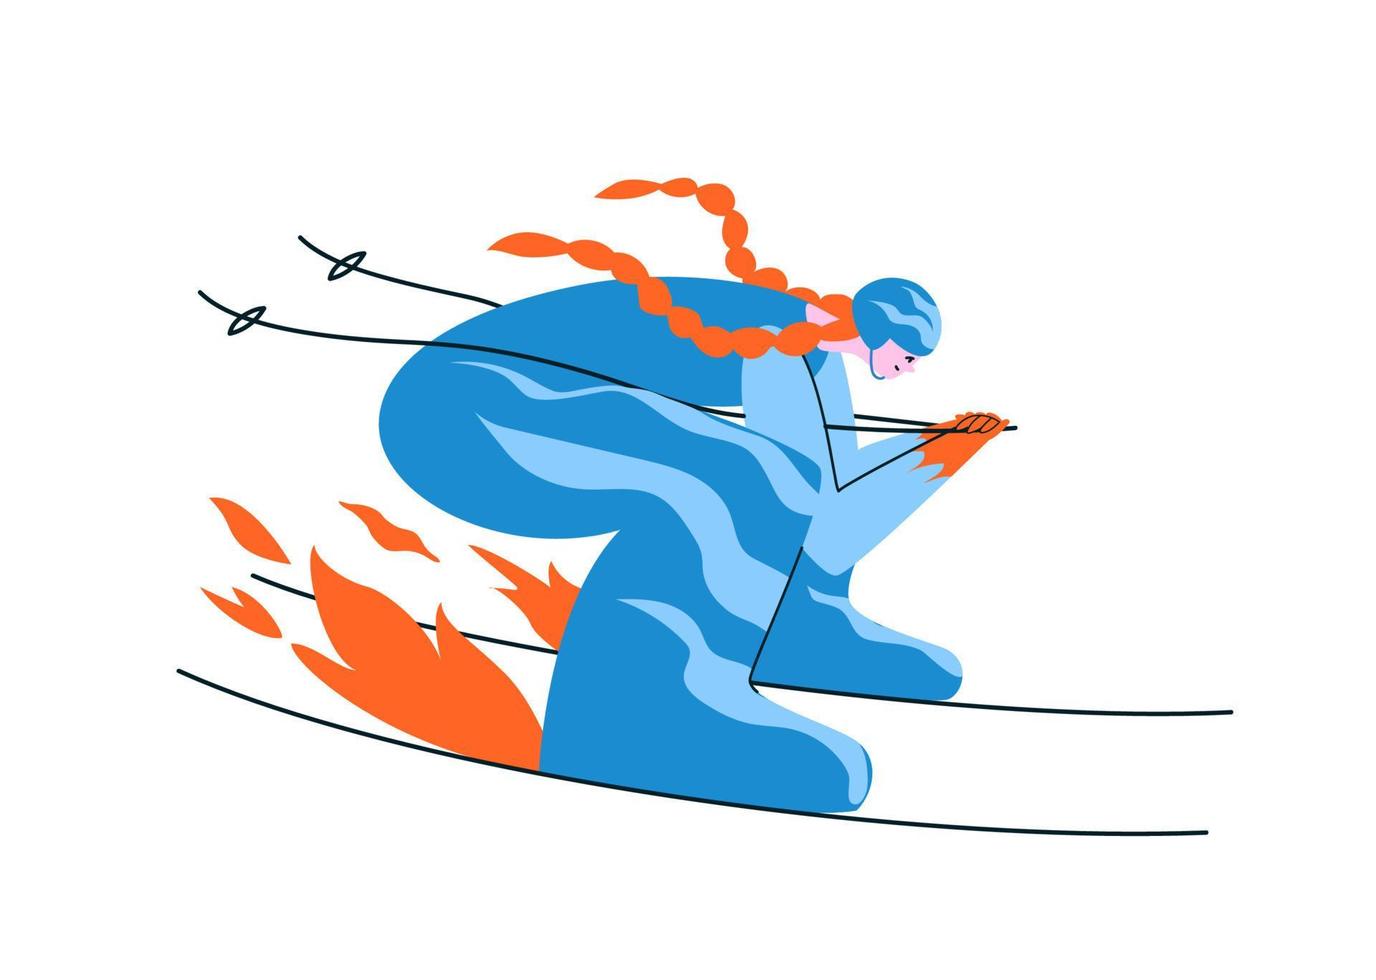 esquiadora pelirroja dibujada a mano con traje azul. una joven esquía en una pose aerodinámica a toda velocidad que enciende el fuego bajo los esquís. ilustración de stock vectorial en estilo de dibujos animados en blanco. vector